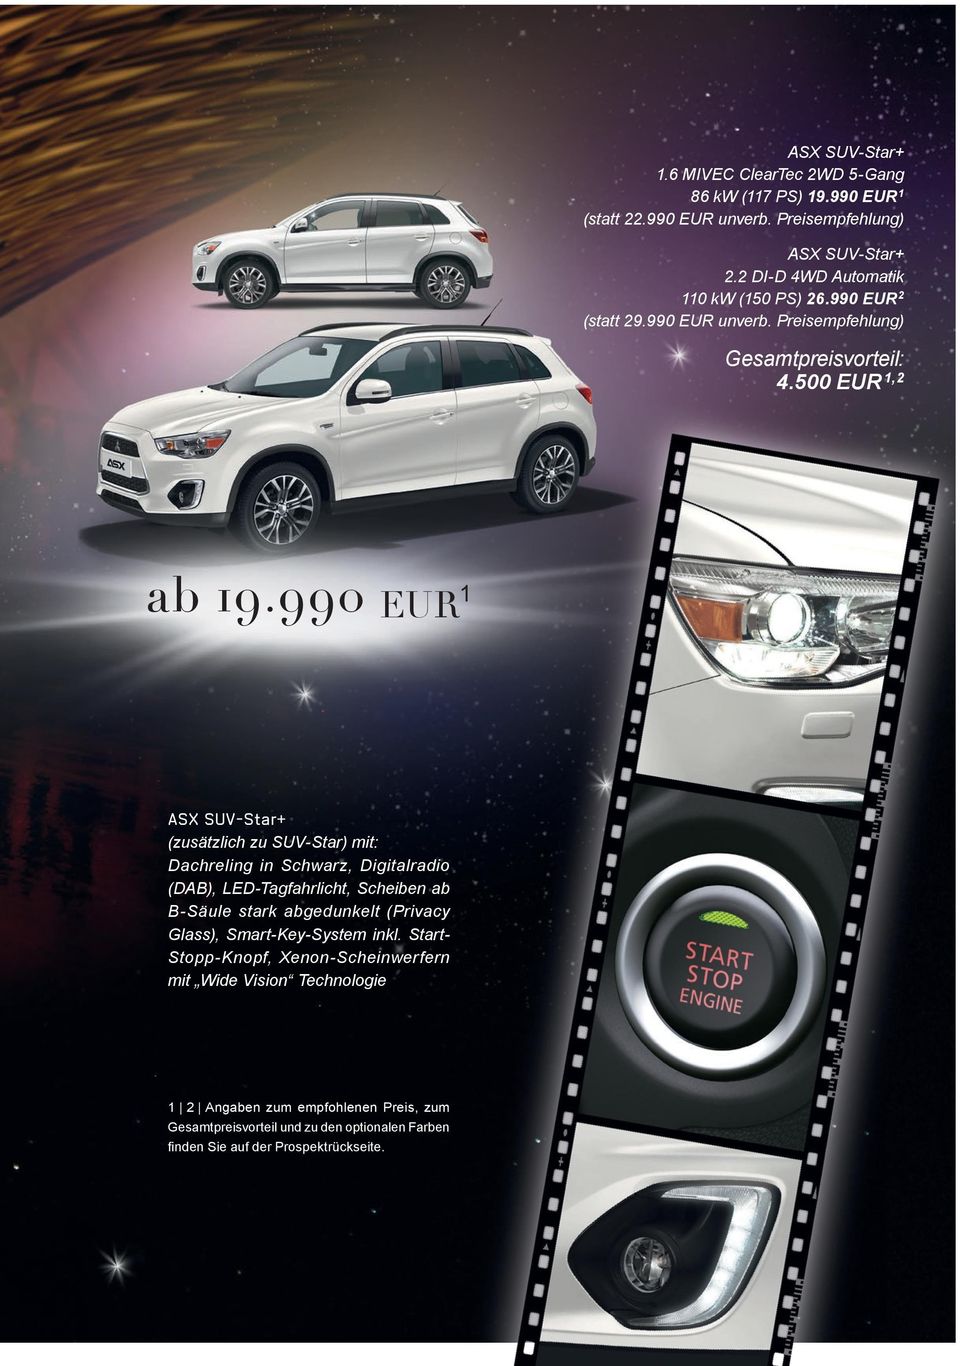 990 EUR 1 ASX SUV-Star+ (zusätzlich zu SUV Star) mit: Dachreling in Schwarz, Digitalradio (DAB), LED-Tagfahrlicht, Scheiben ab B Säule stark abgedunkelt (Privacy